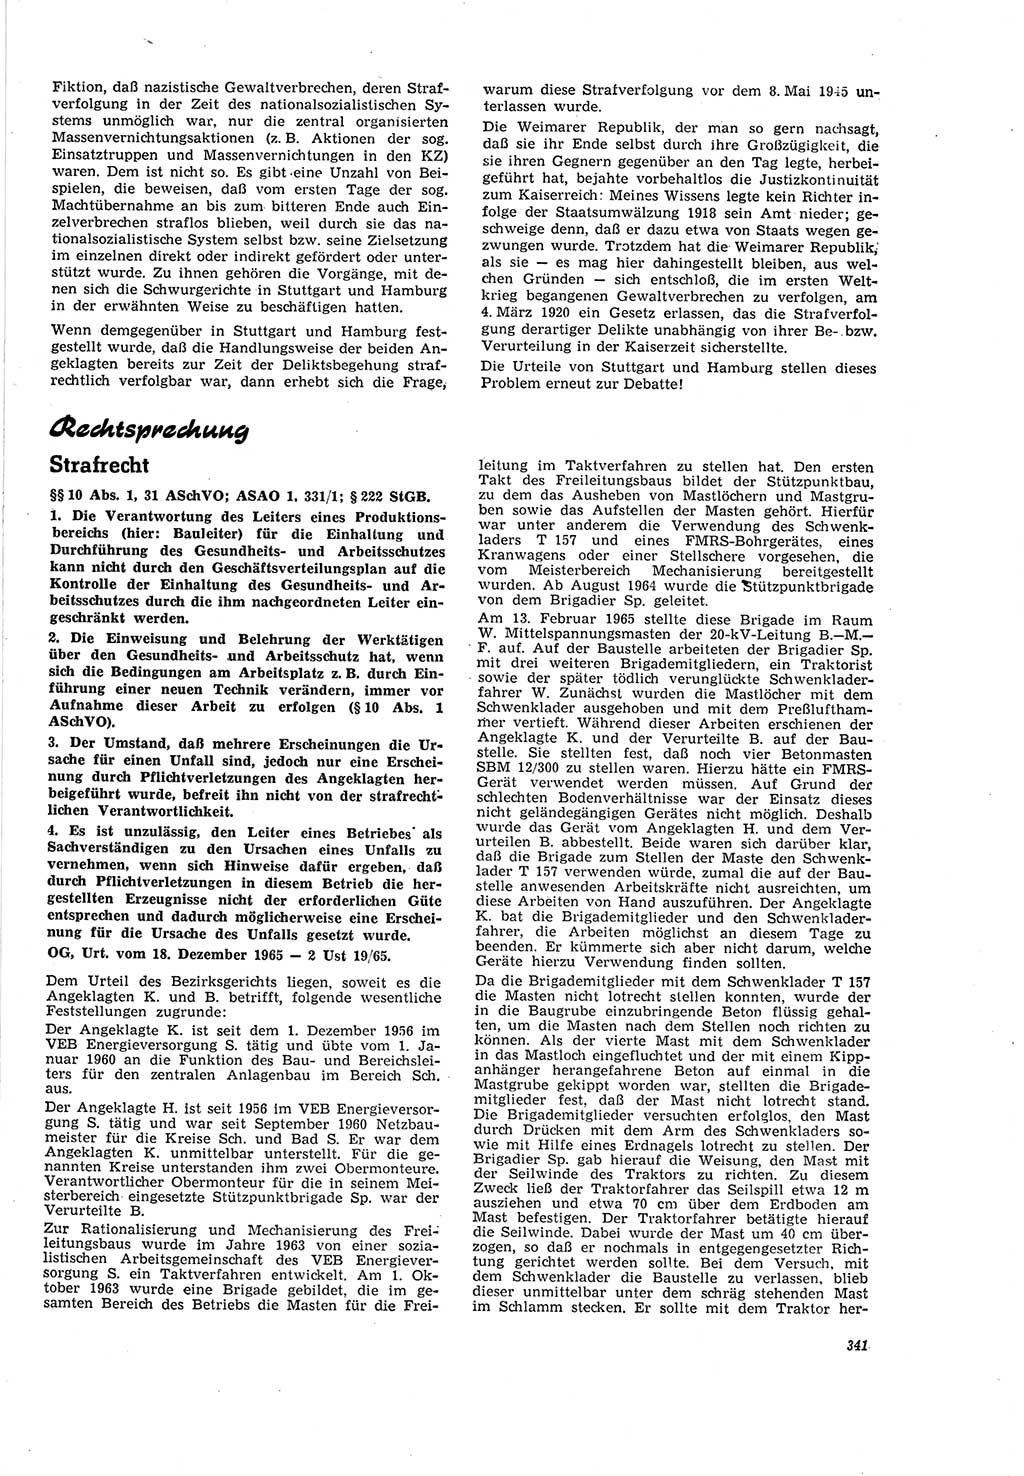 Neue Justiz (NJ), Zeitschrift für Recht und Rechtswissenschaft [Deutsche Demokratische Republik (DDR)], 20. Jahrgang 1966, Seite 341 (NJ DDR 1966, S. 341)